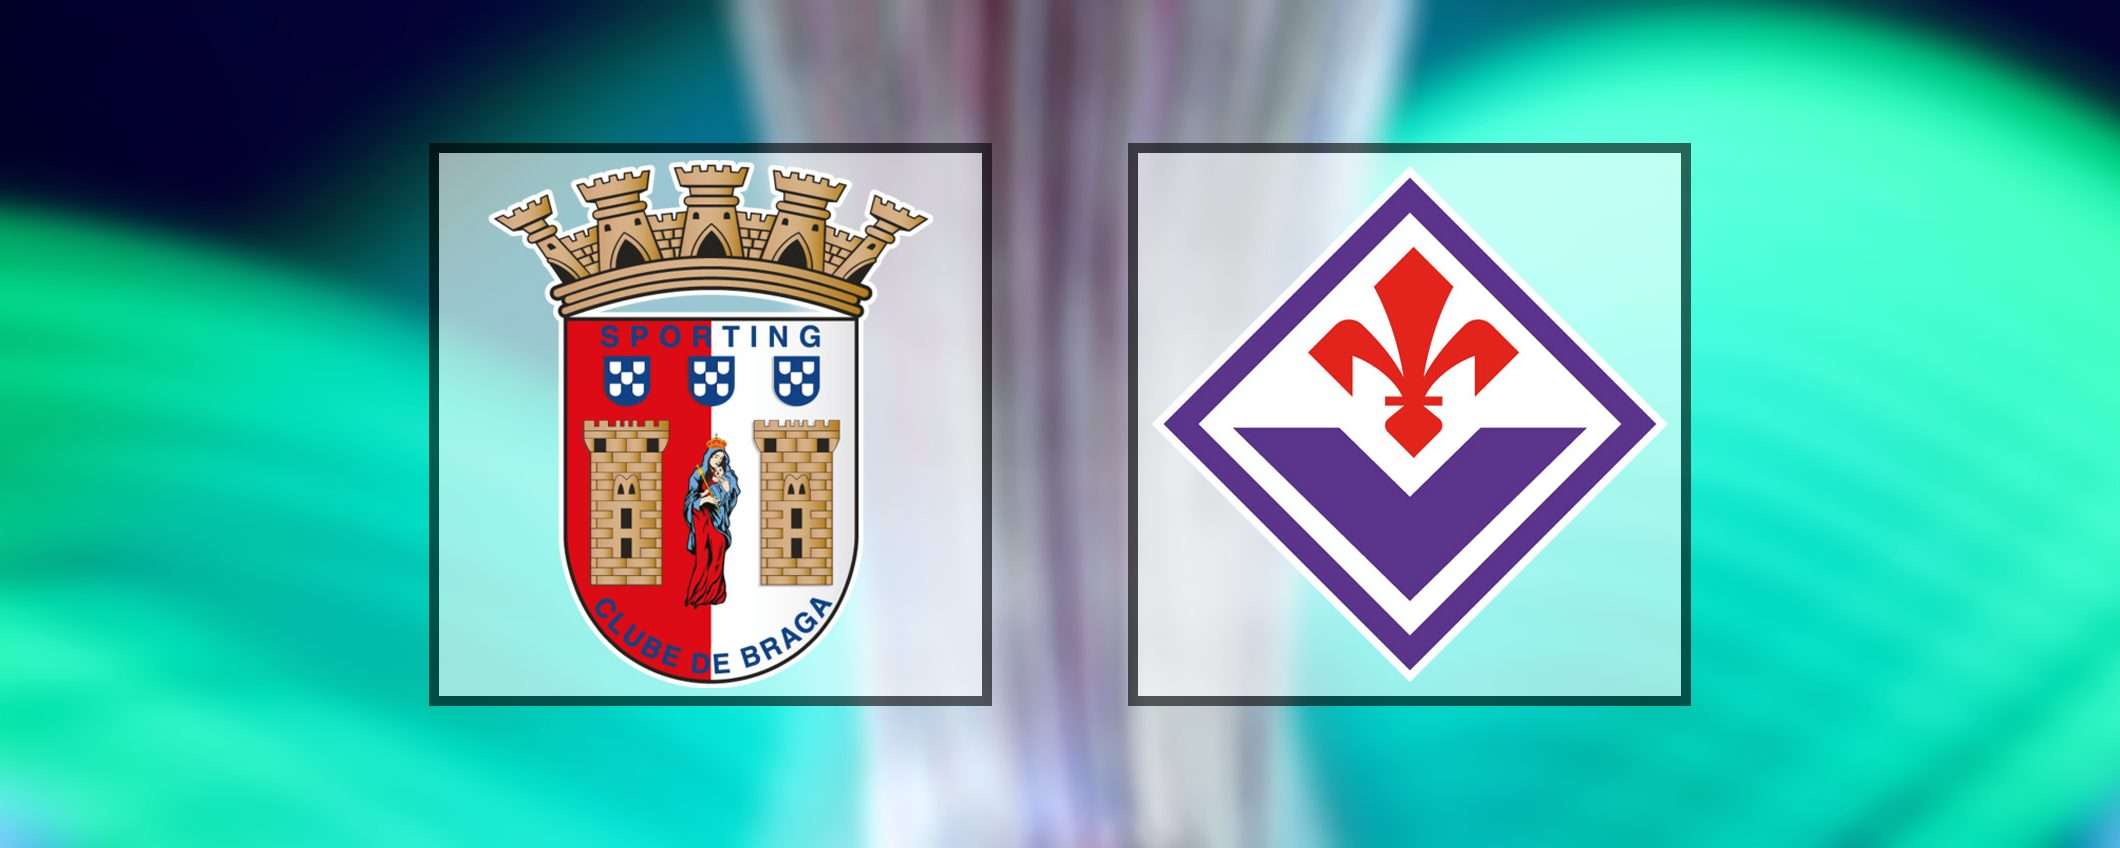 Come vedere Sporting Braga-Fiorentina in streaming